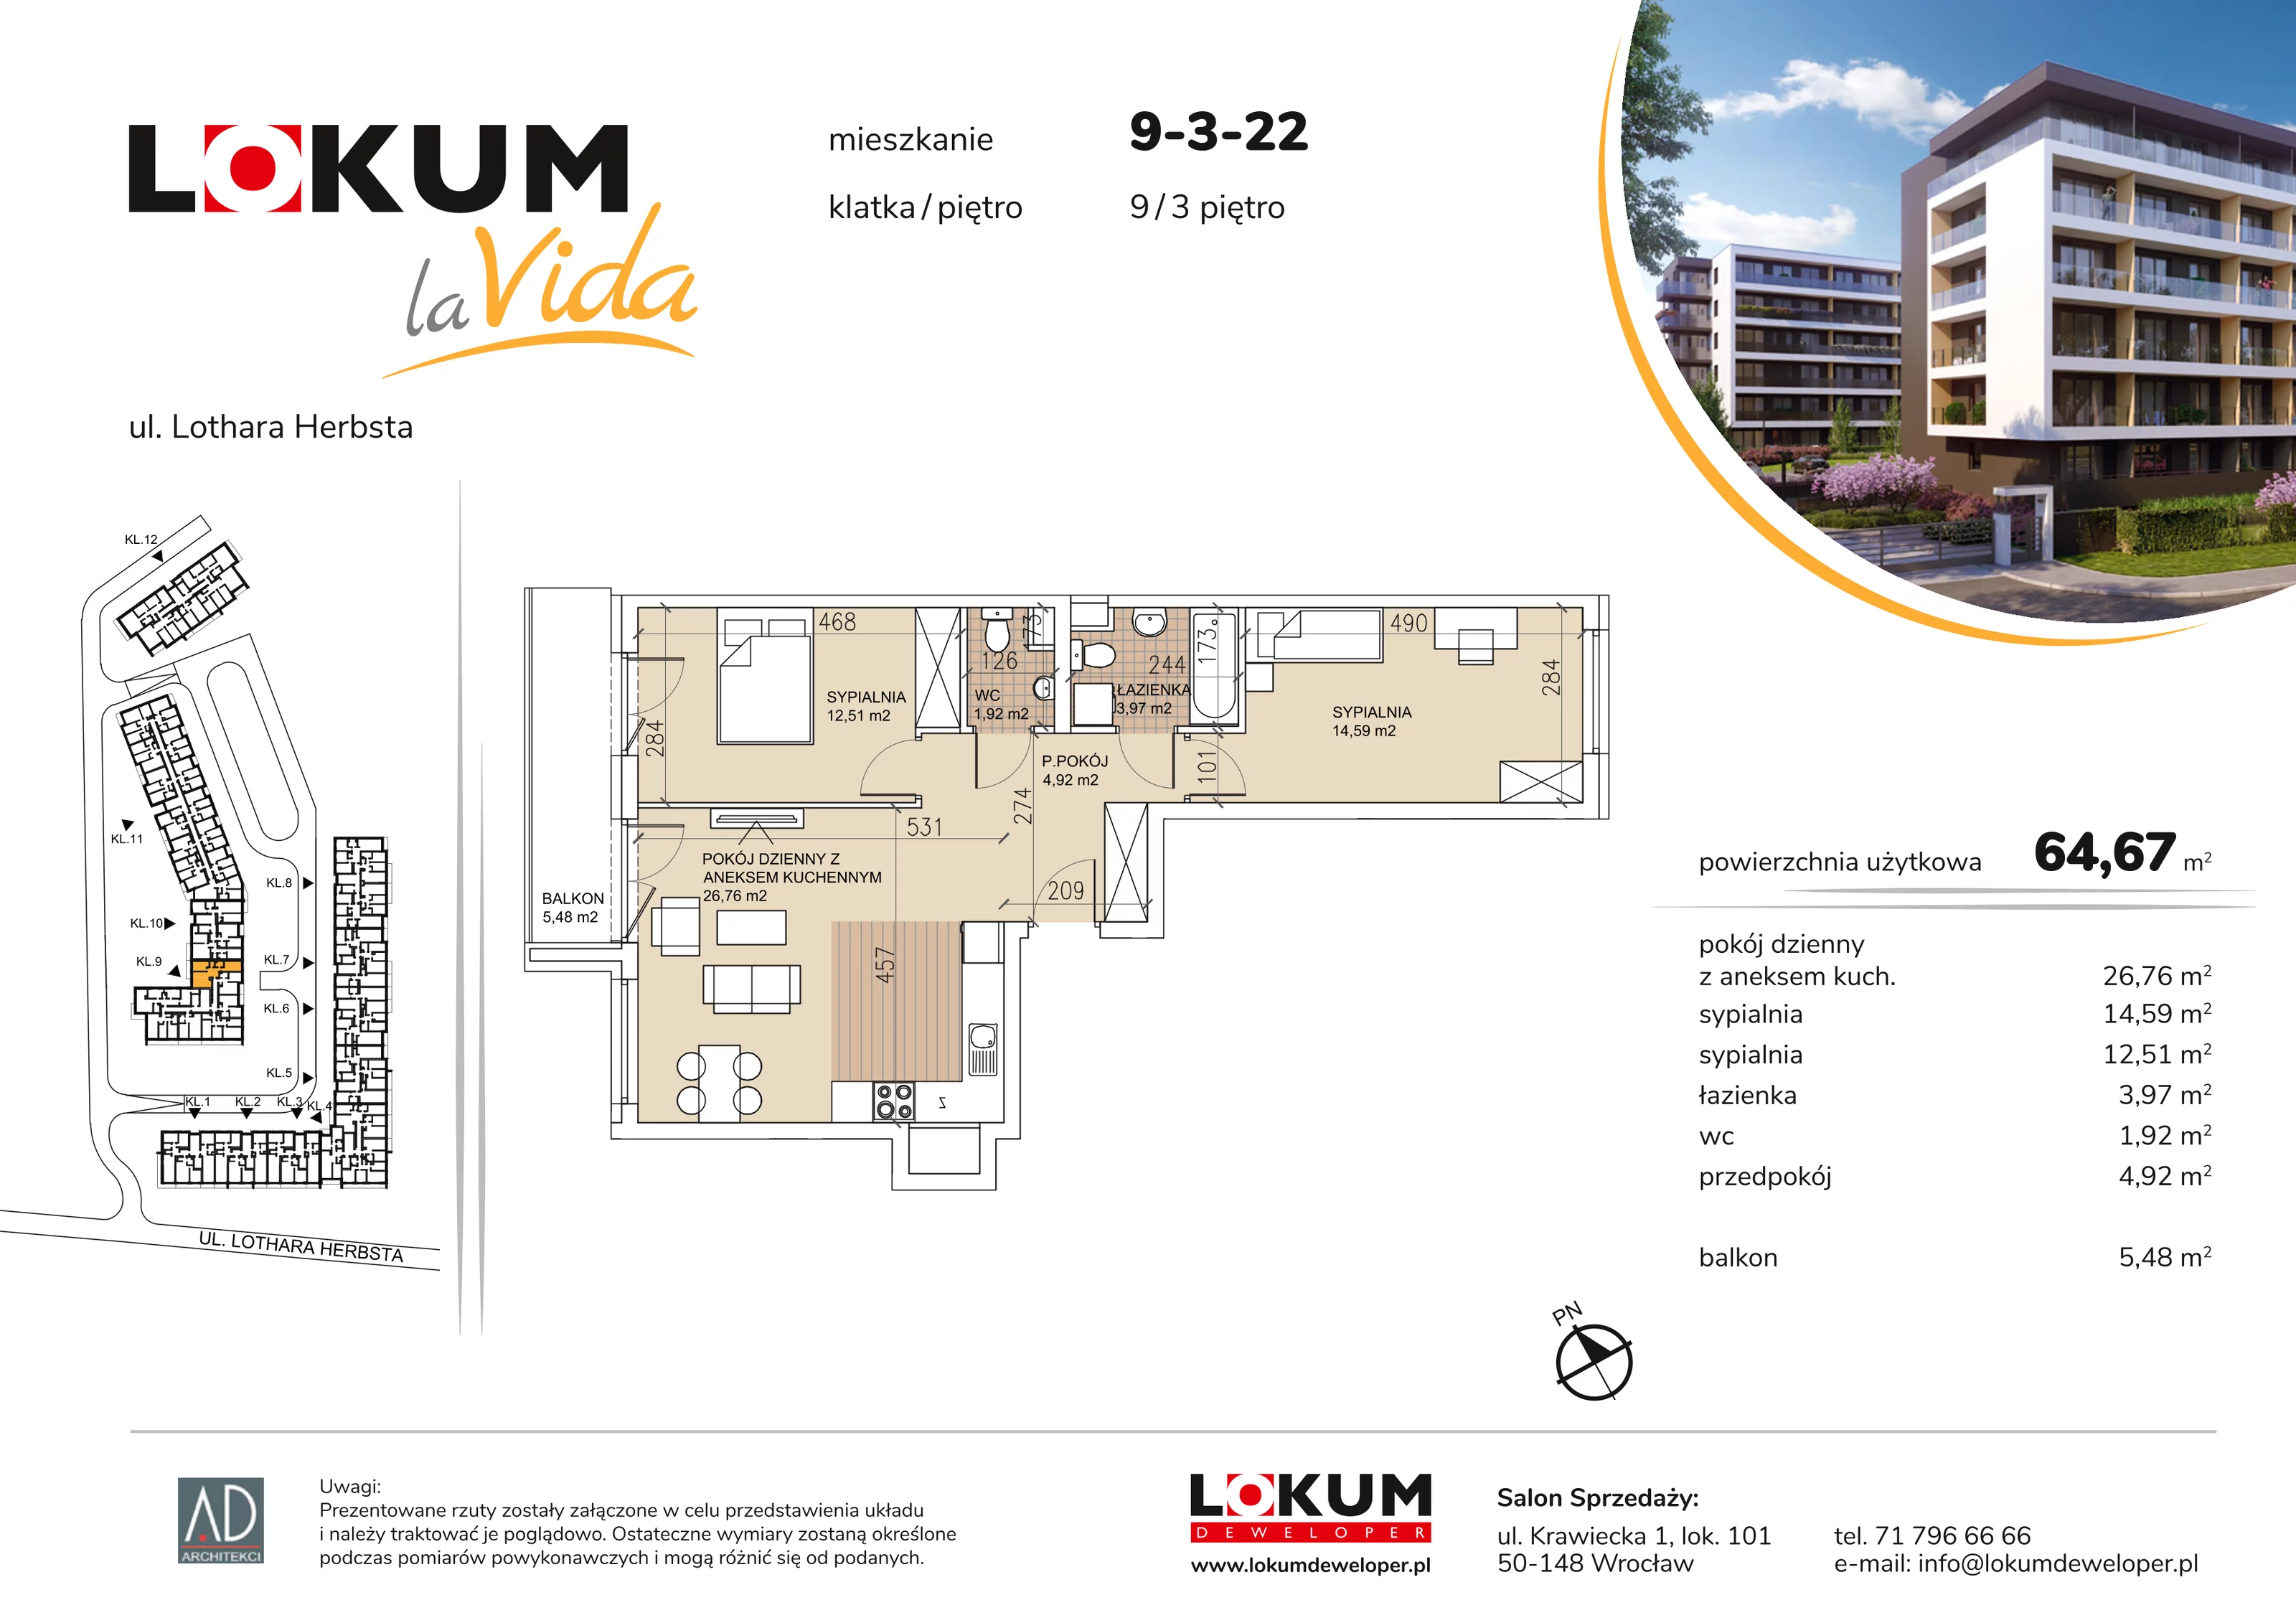 Mieszkanie 64,67 m², piętro 3, oferta nr 9-3-22, Lokum la Vida, Wrocław, Sołtysowice, ul. Lothara Herbsta